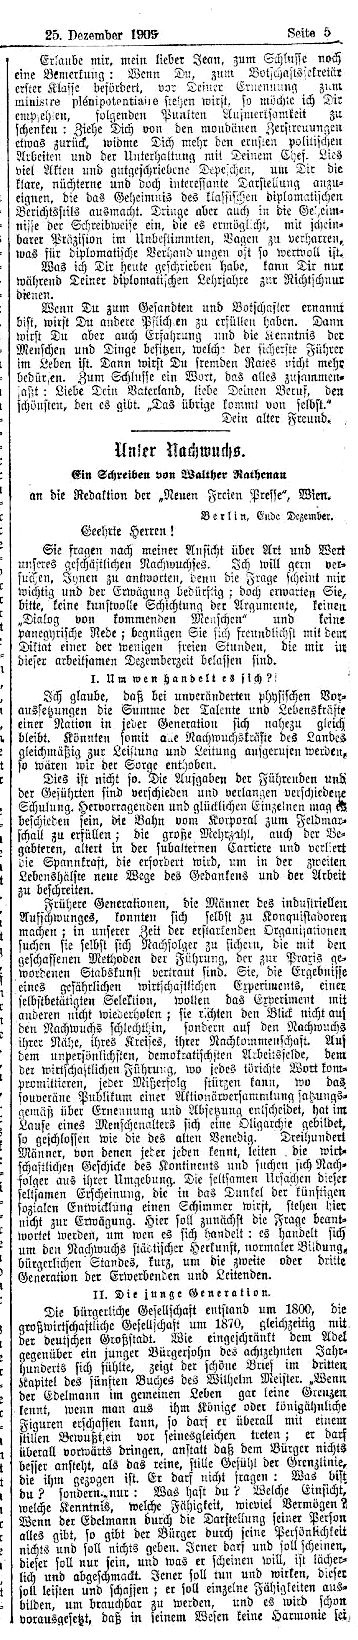 Neue_Freie_Presse_Wien_25_12_1909.jpg